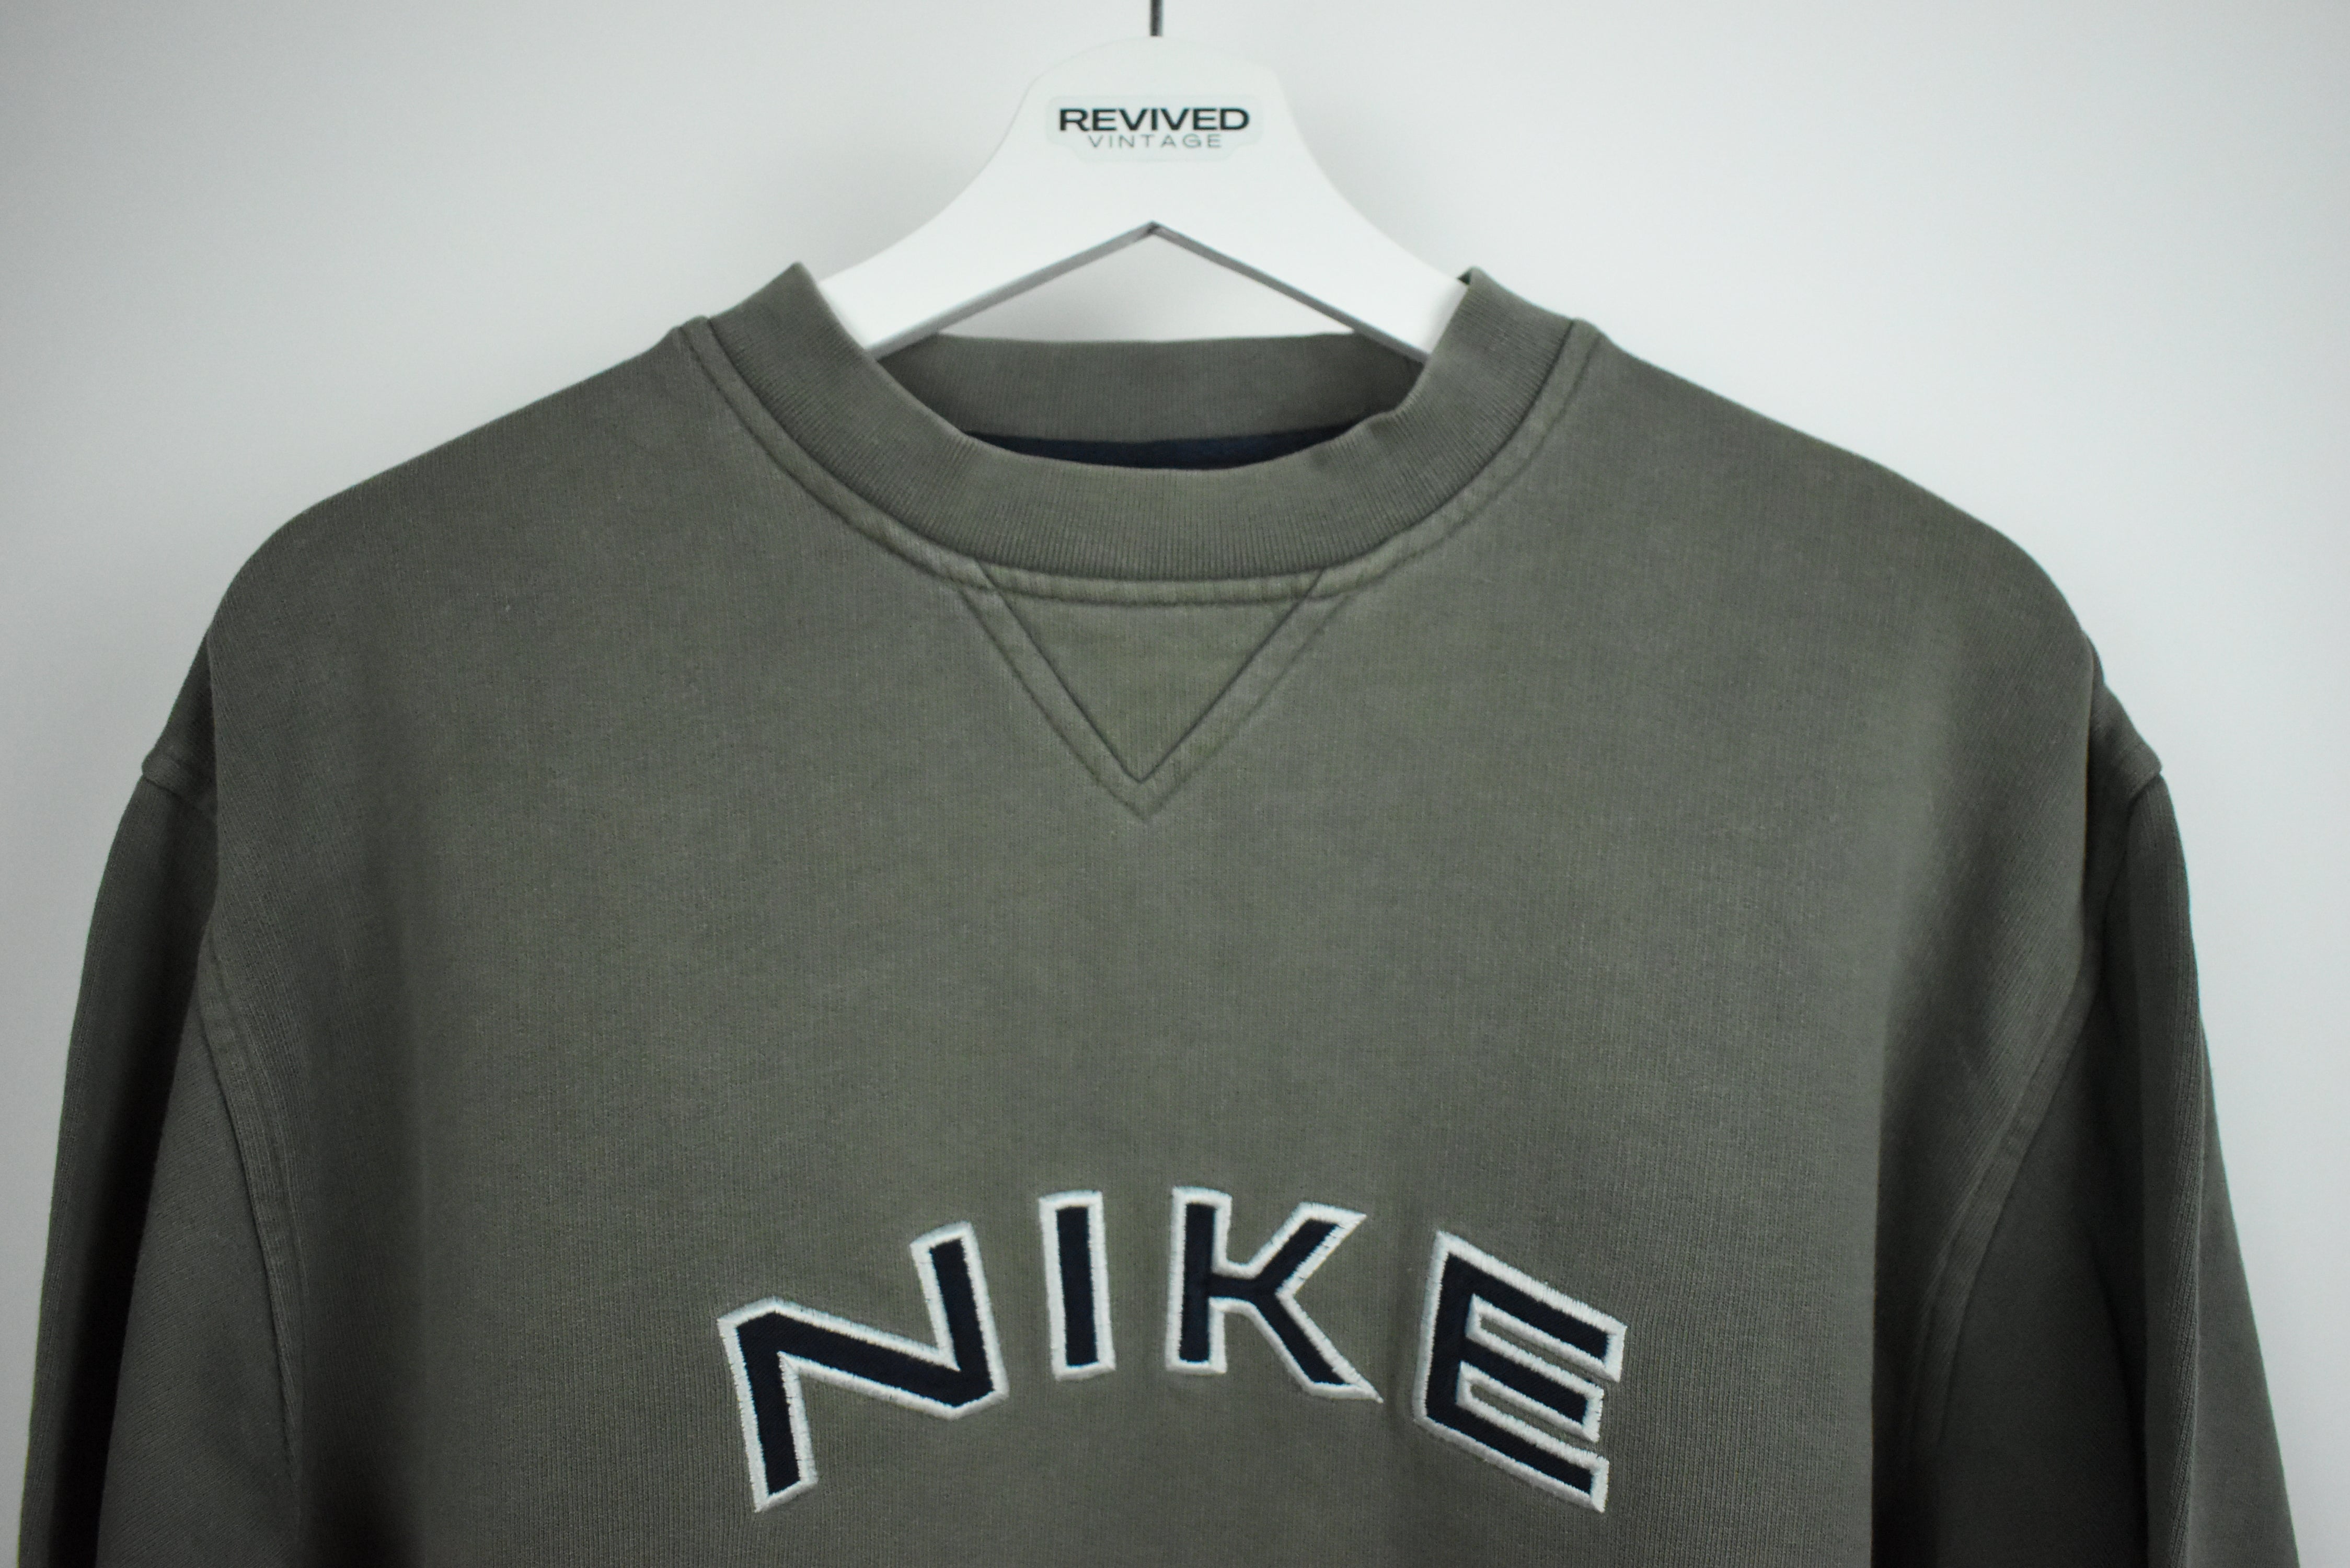 Vintage Nike Embroidered Sweatshirt Small